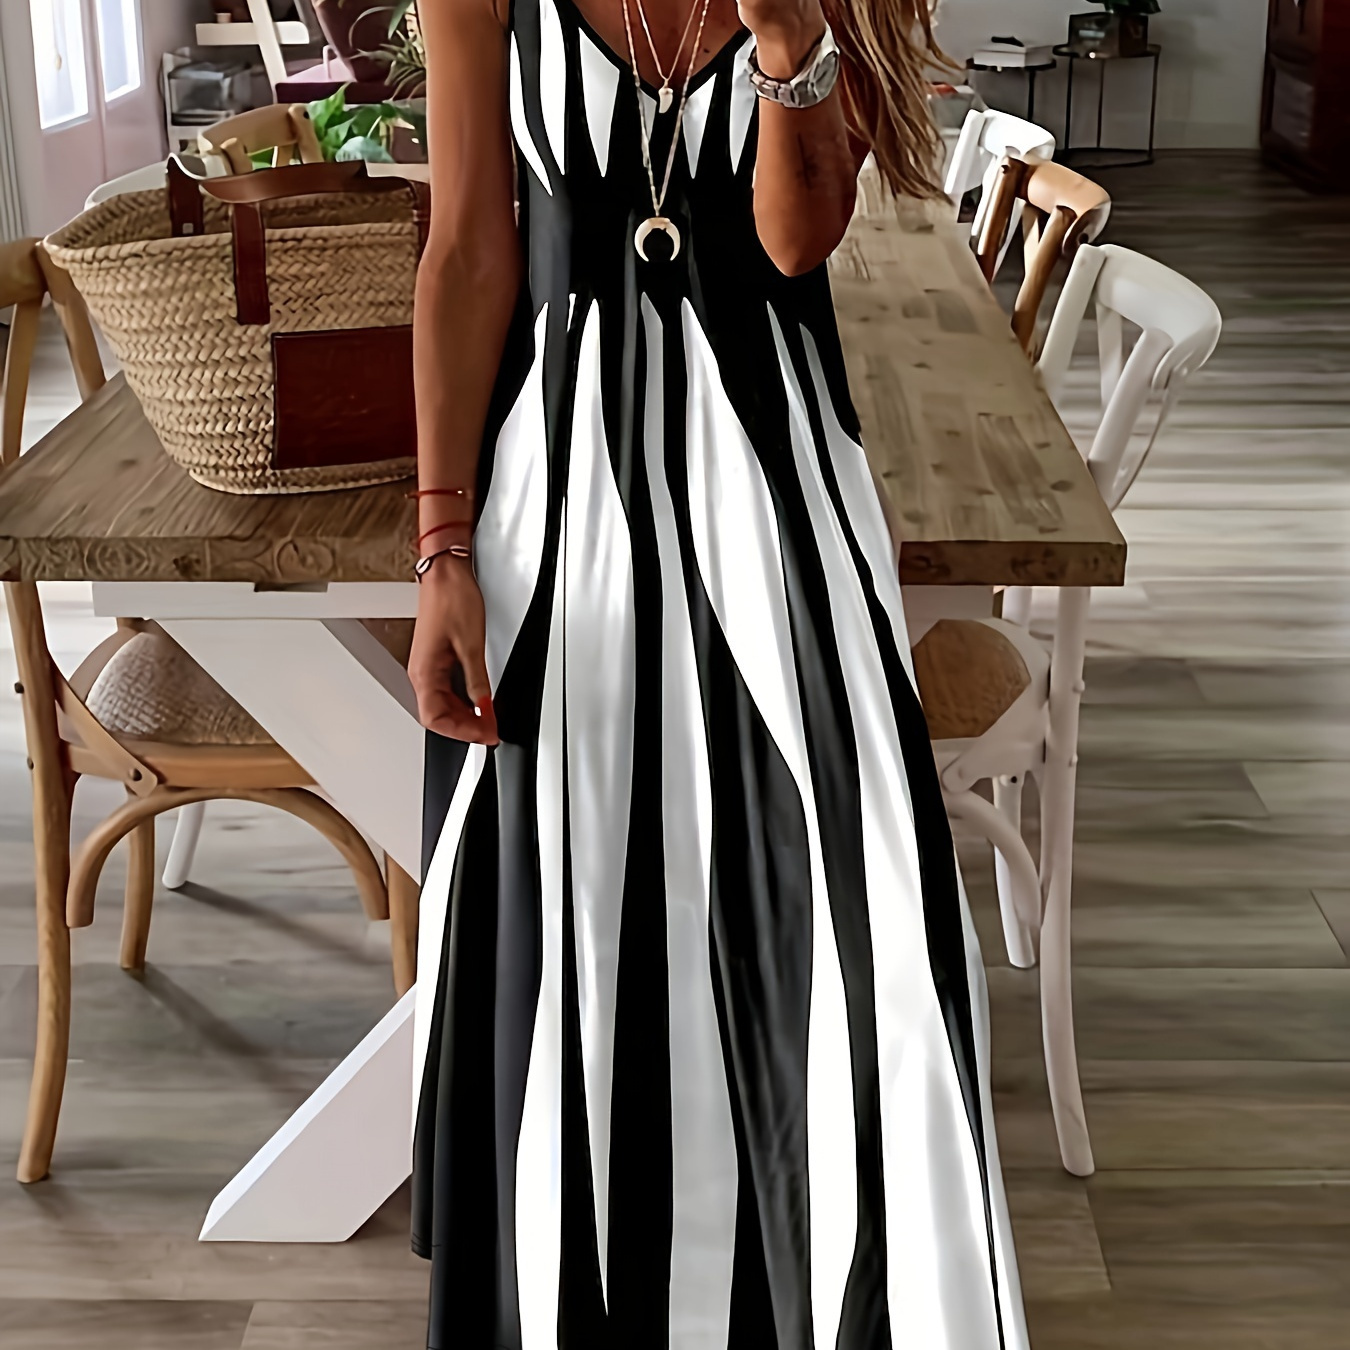 

Striped Spaghetti Strap Dress, Elegant V Neck Sleeveless Cami Dress For Spring & Summer, Women's Clothing